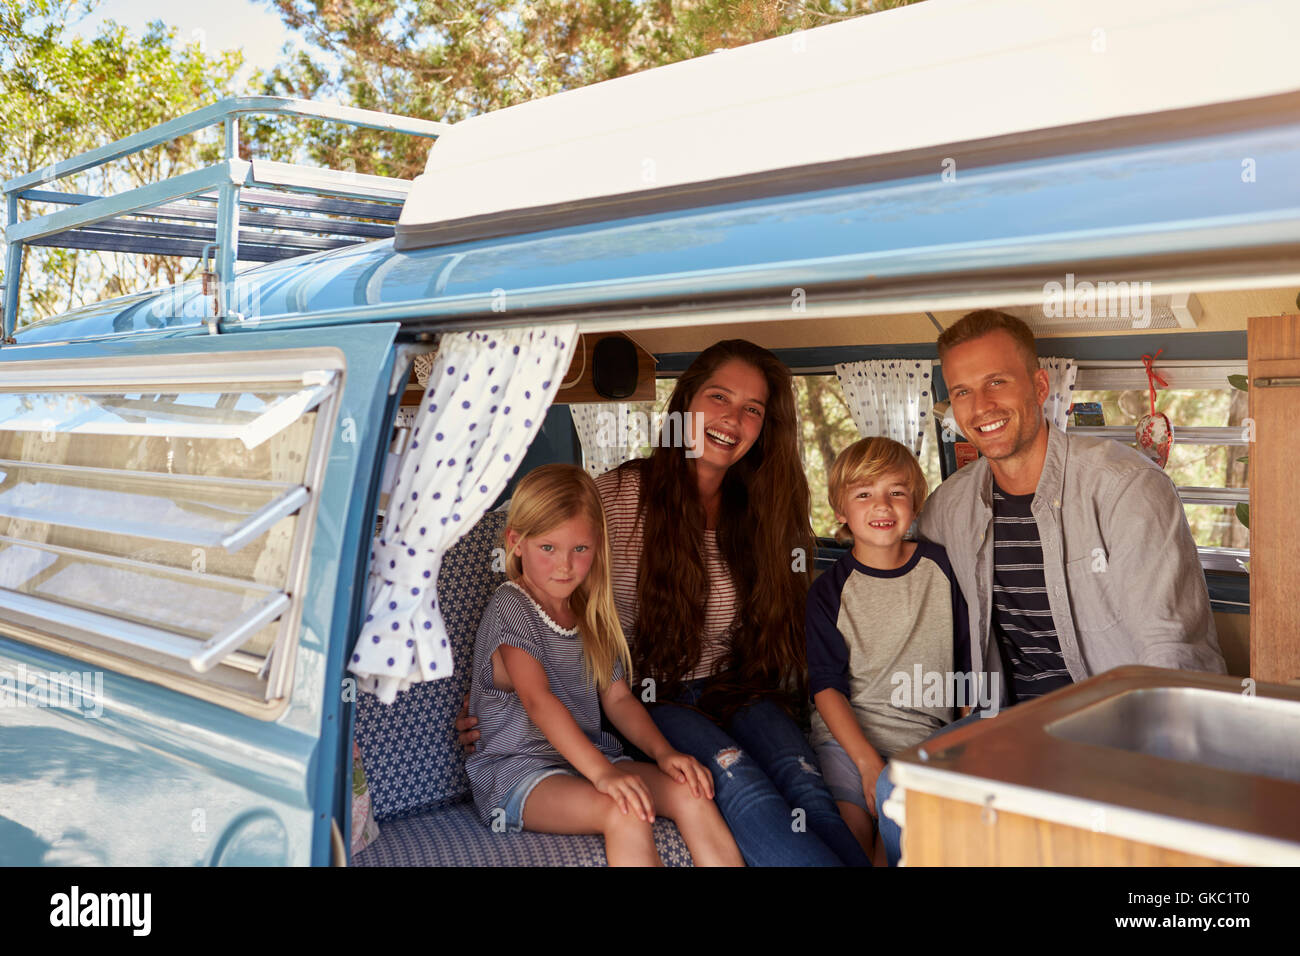 Family inside vintage camper van, seen through open door Stock Photo